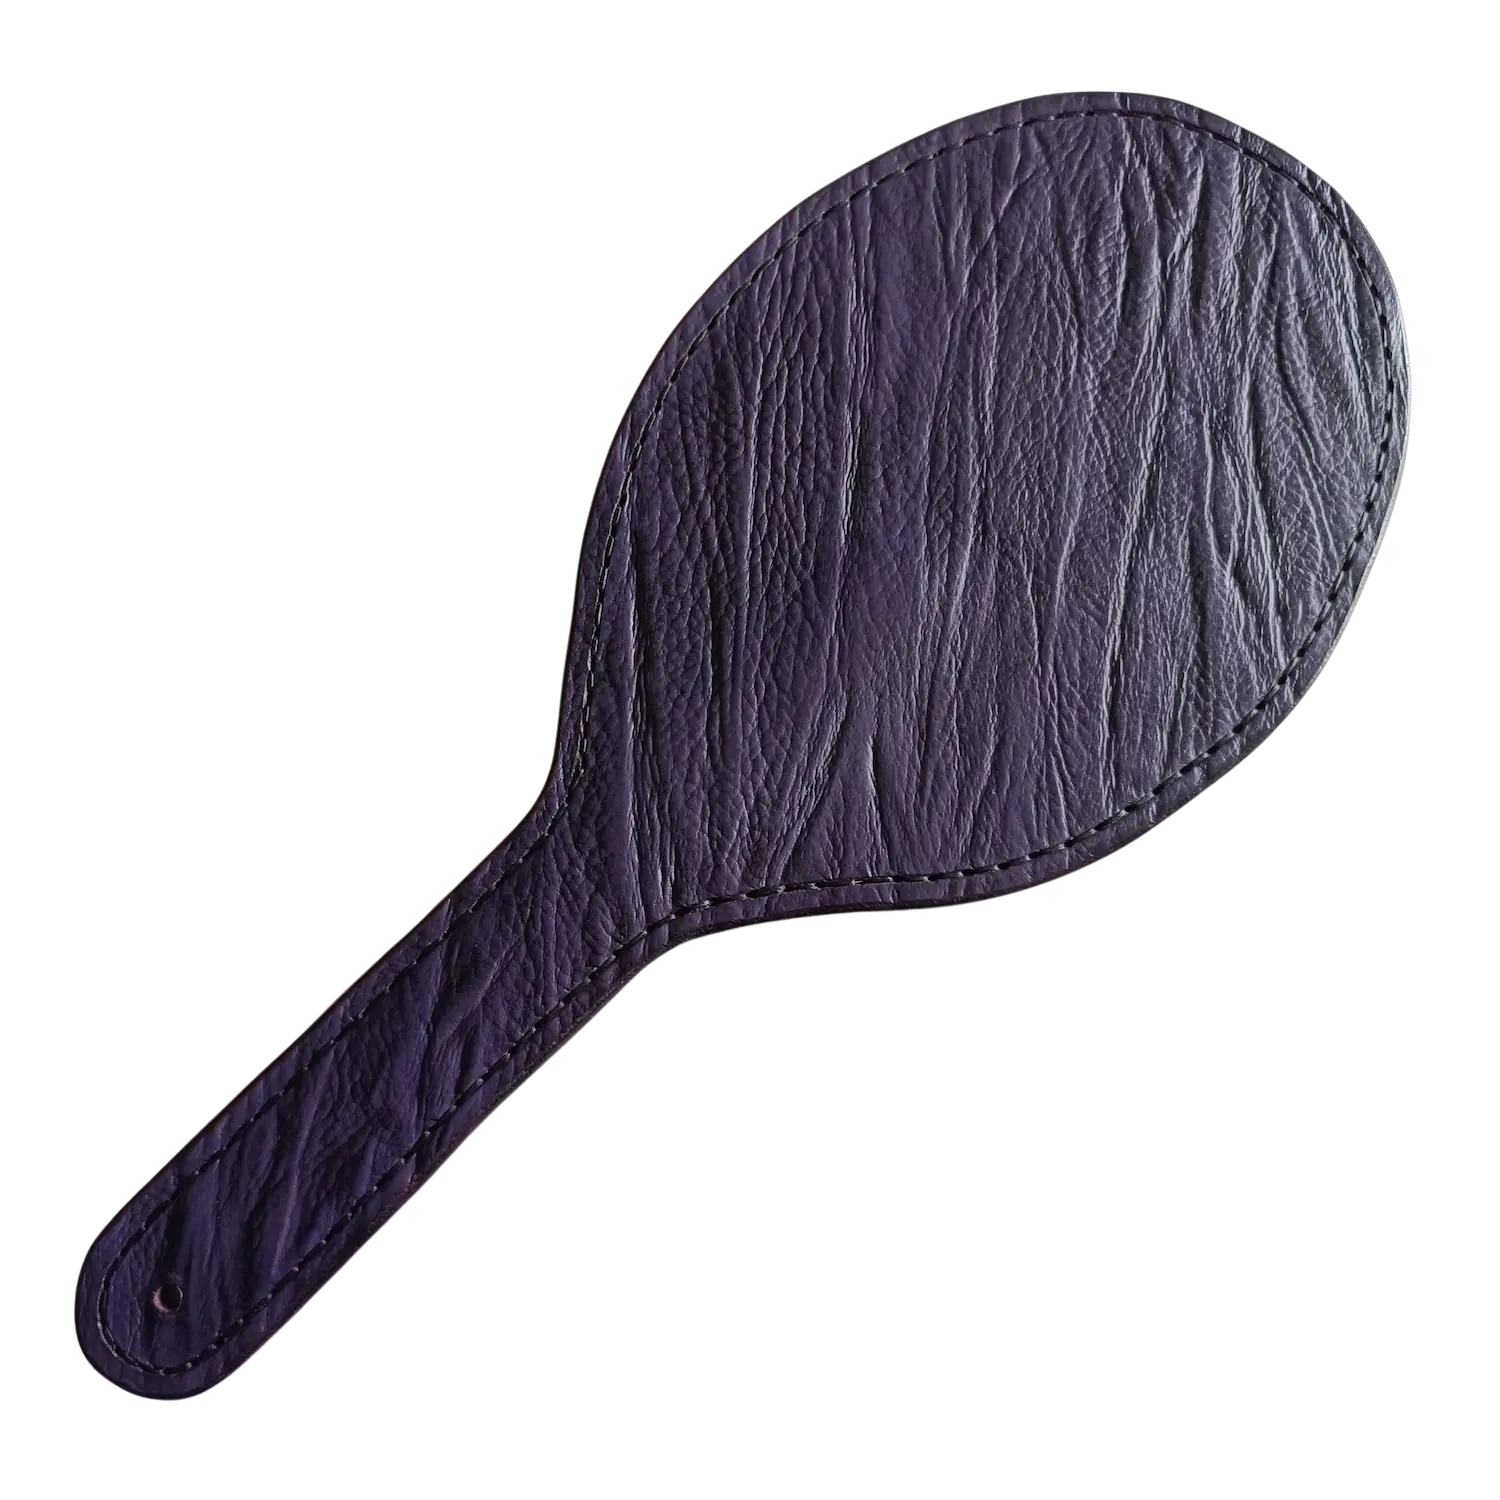 Oválná kožená plácačka z fialové kůže s reliéfem a s výstuhou. Cena 2700 Kč